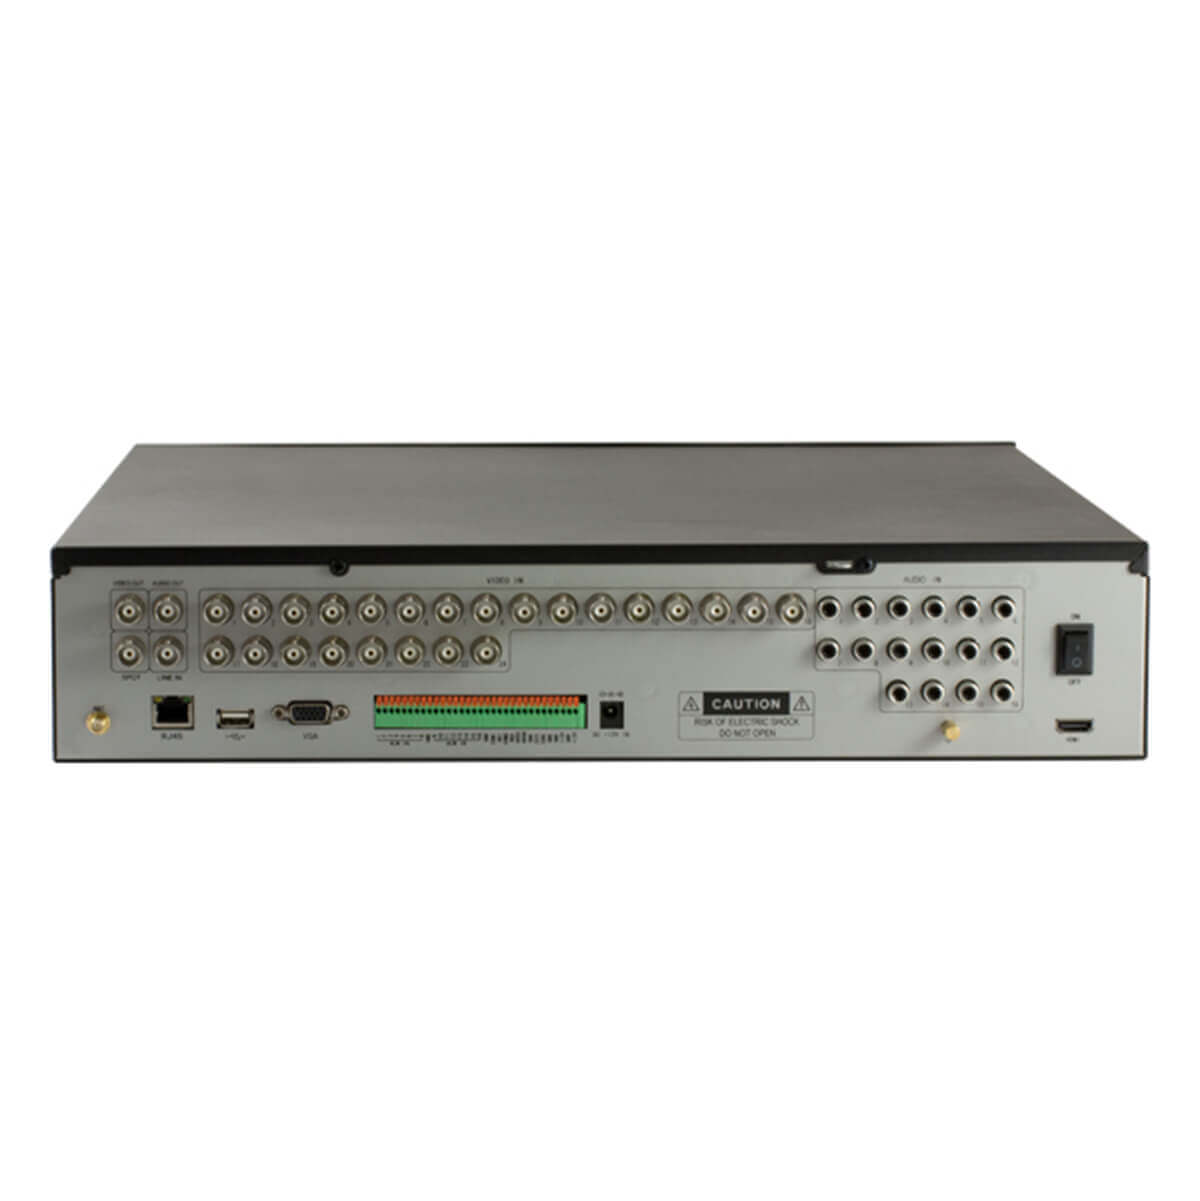 Video grabador digital DVR 24 video /16 audio, HDMI, H264, WIFI. Incluye mouse y control remoto.